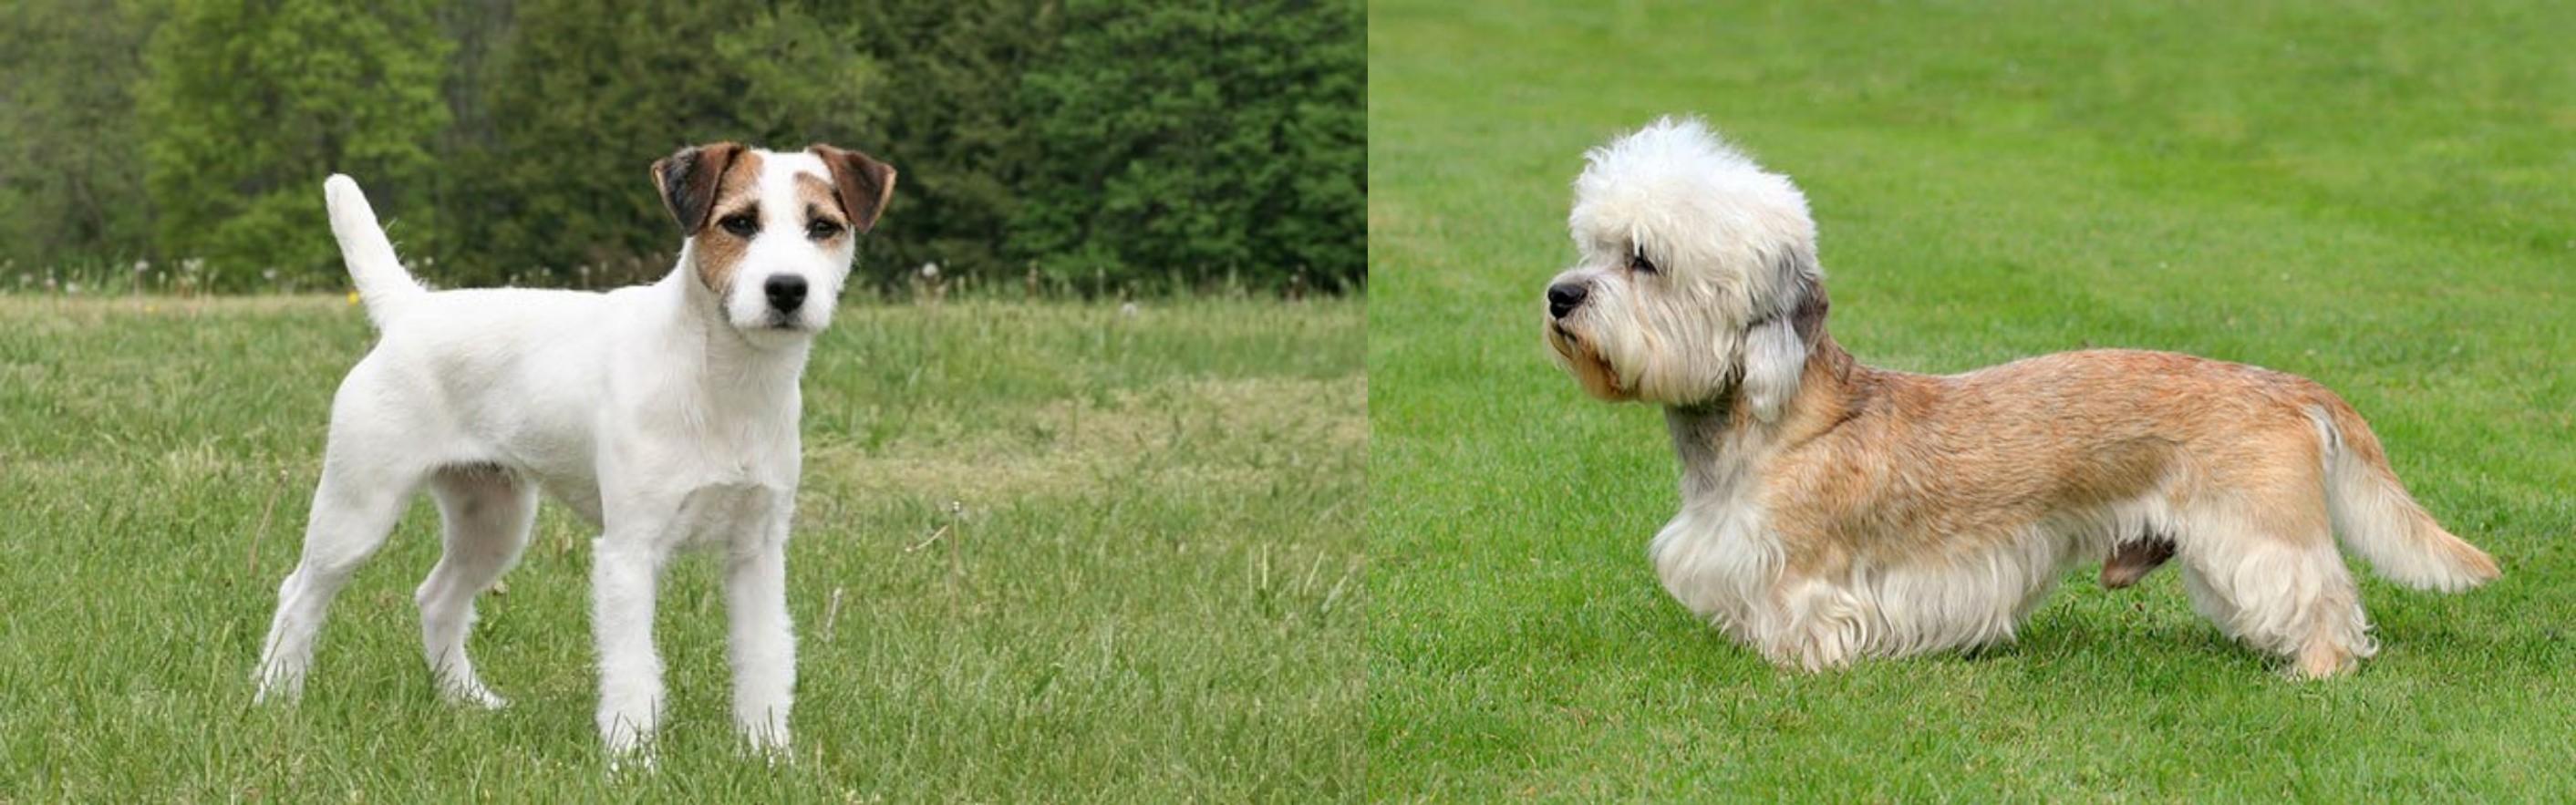 Jack Russell Terrier Vs Dandie Dinmont Terrier Breed Comparison